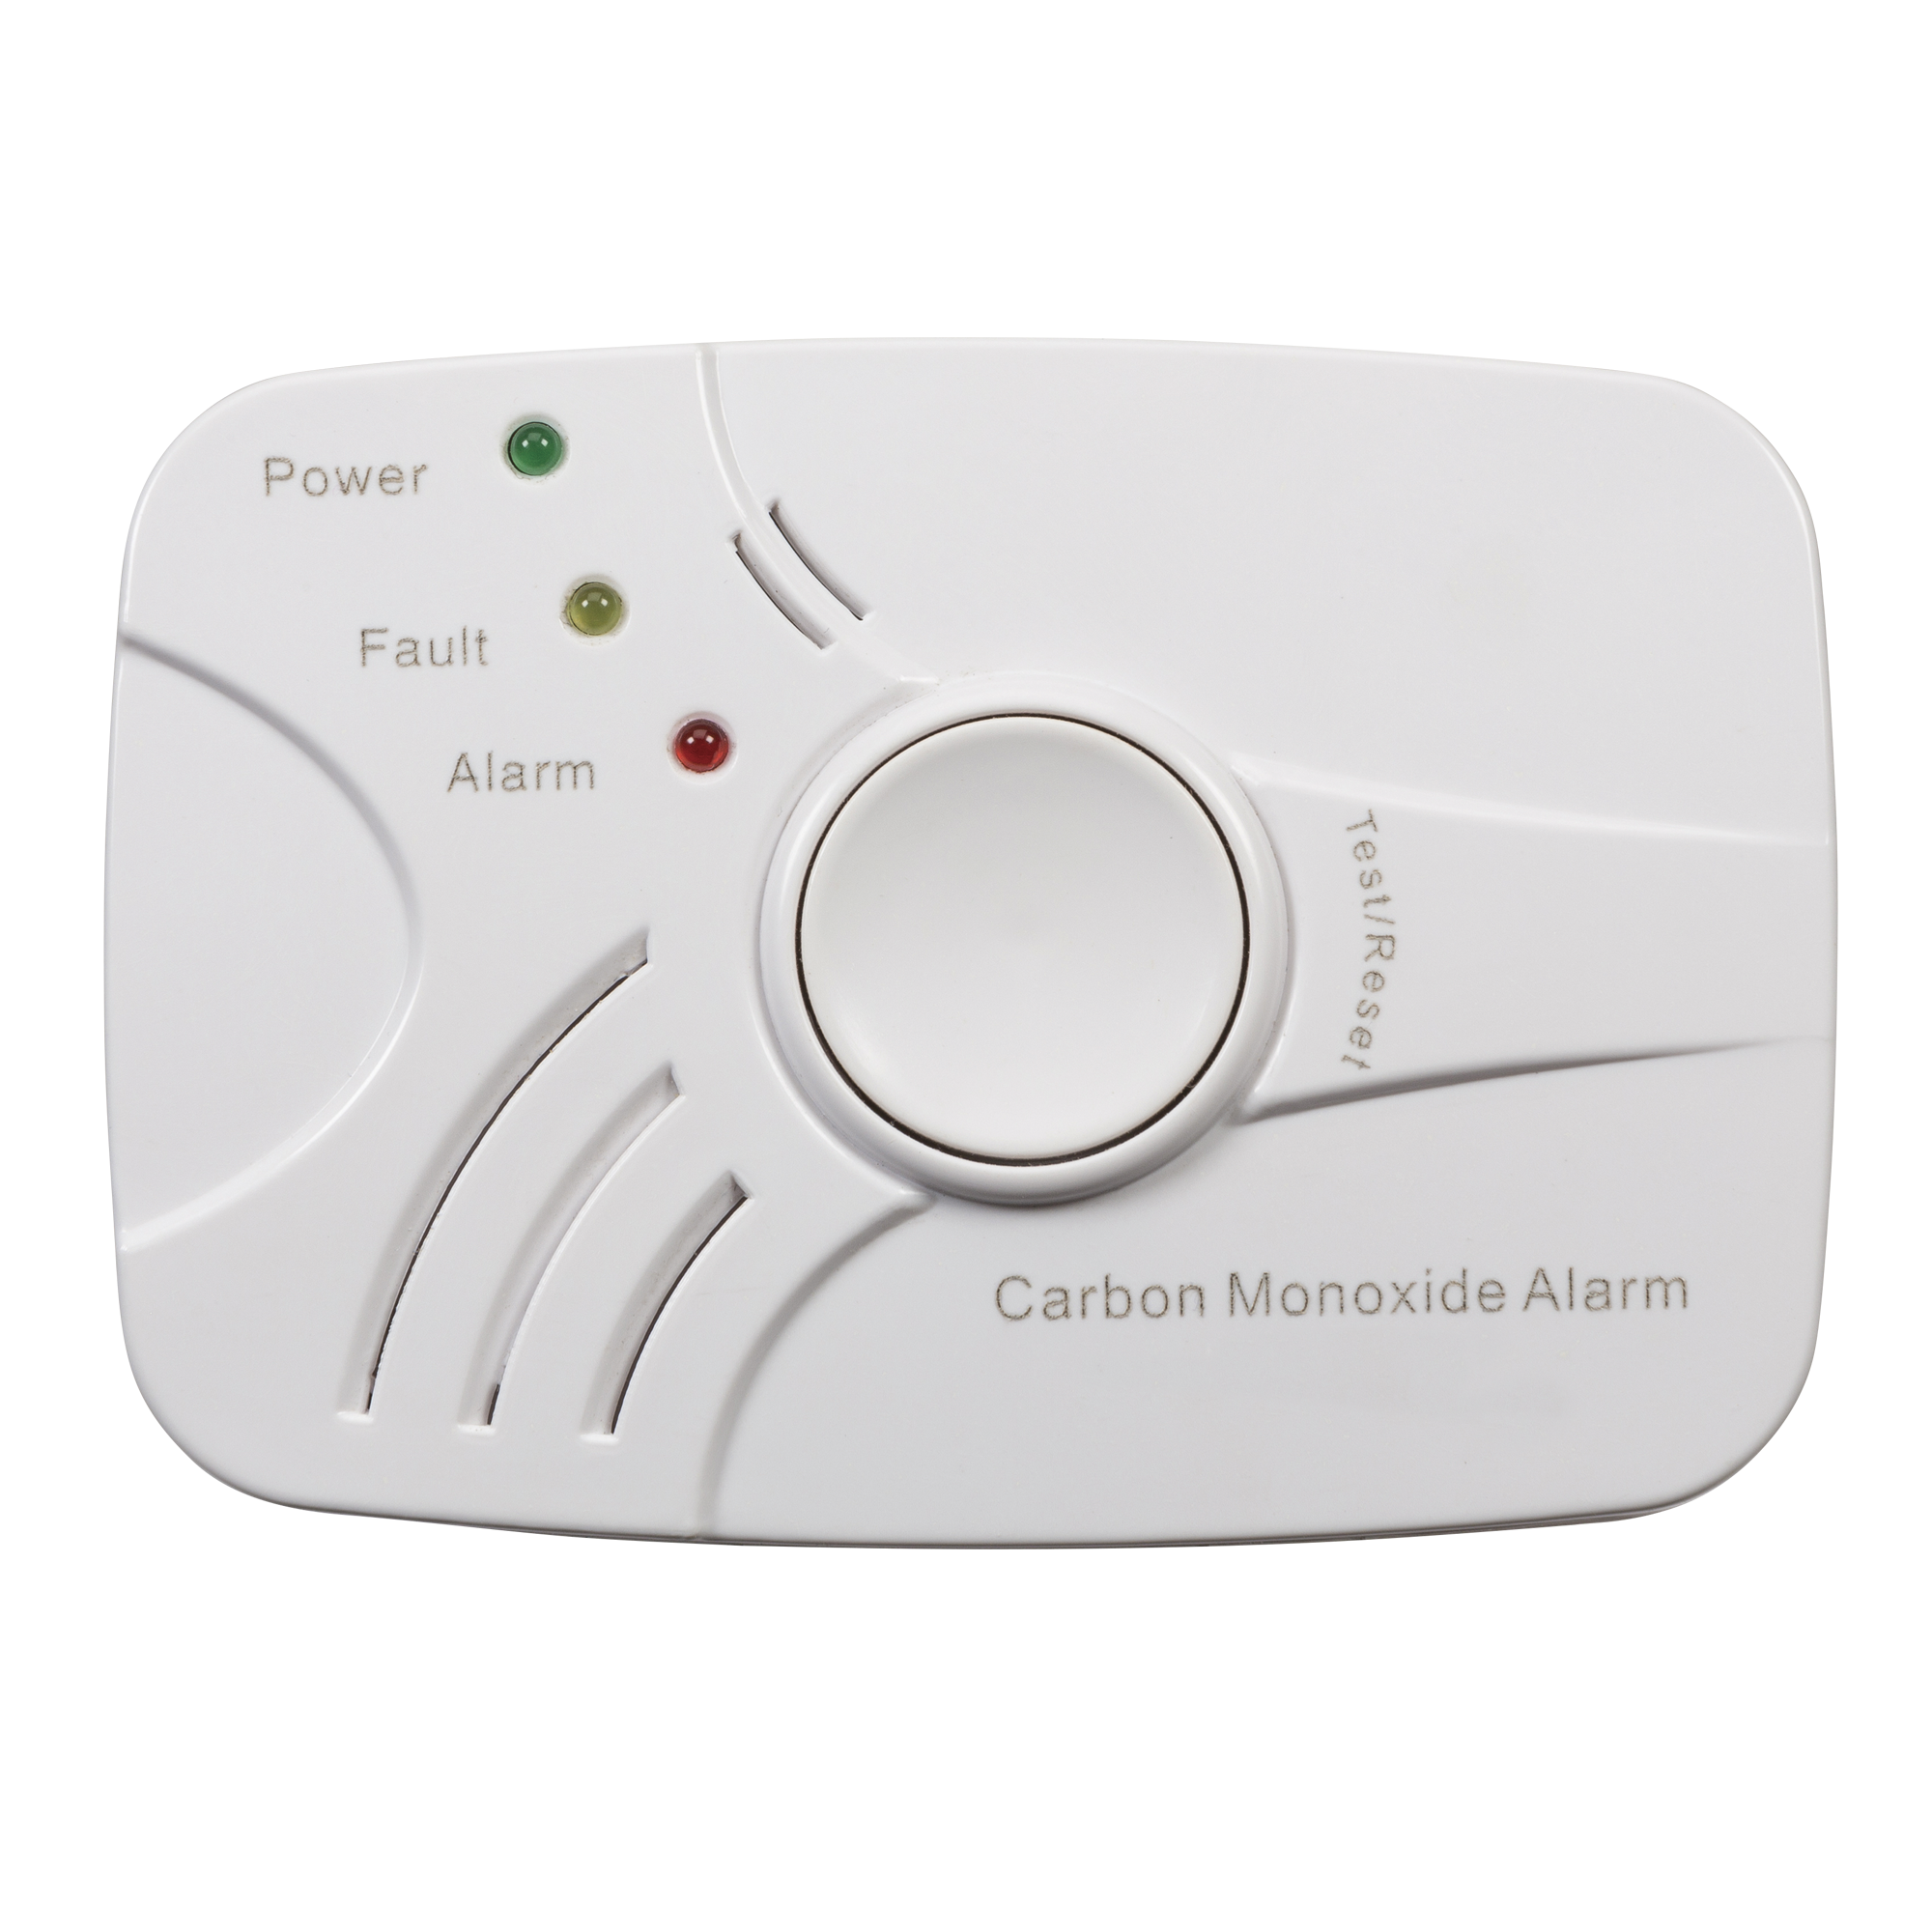 Carbon Monoxide Alarm - DT001 